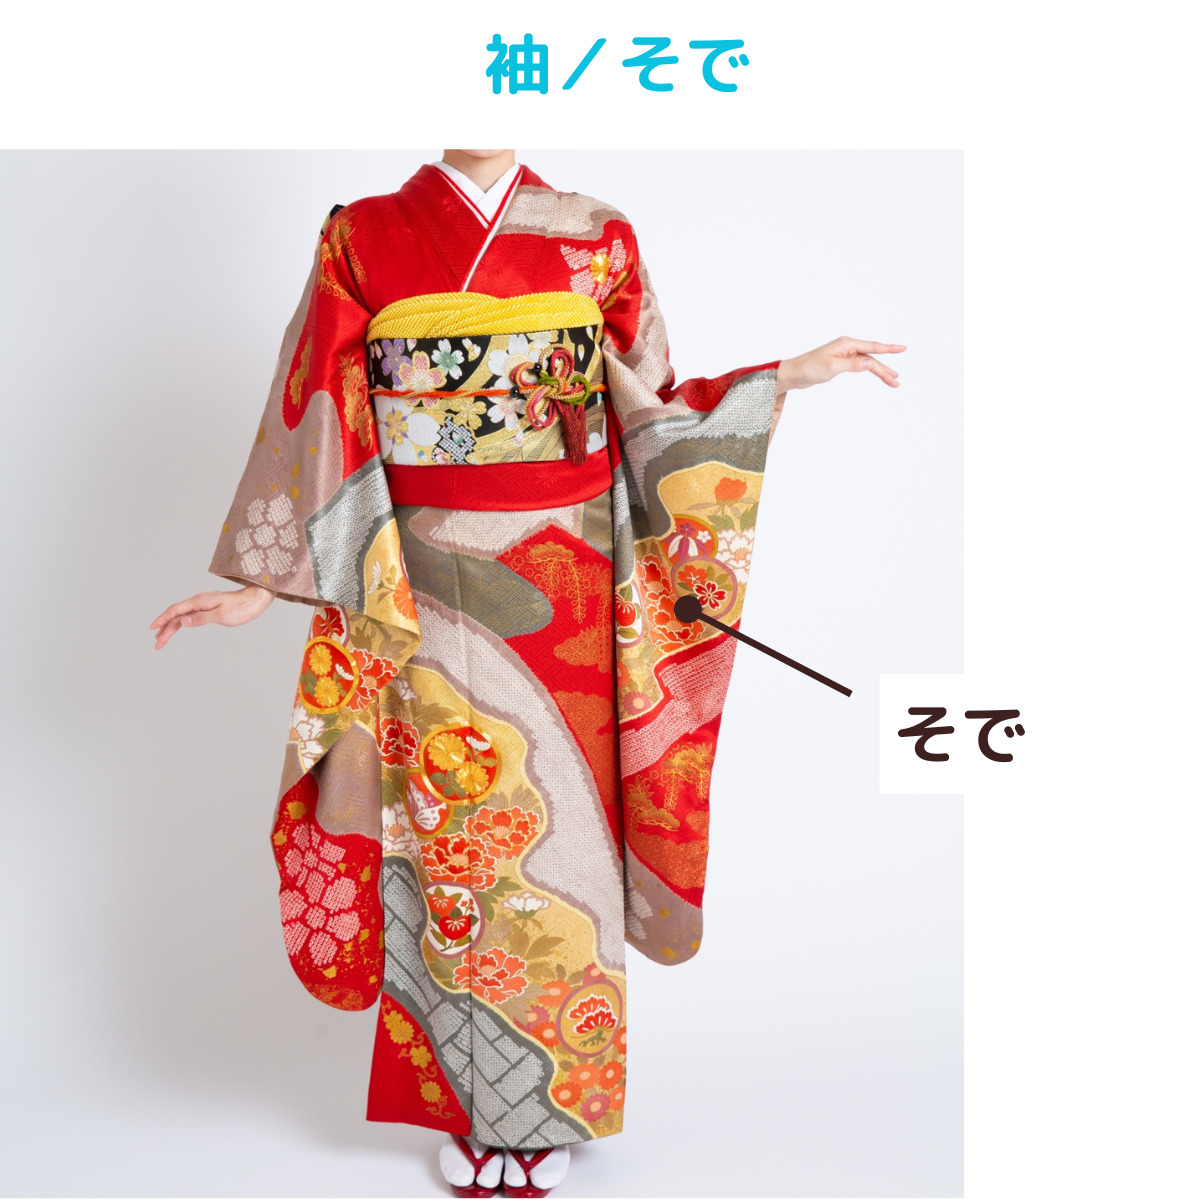 着物kimonoの名称、袖／そでの説明画像、写真。写真は袖の長い振袖の様子